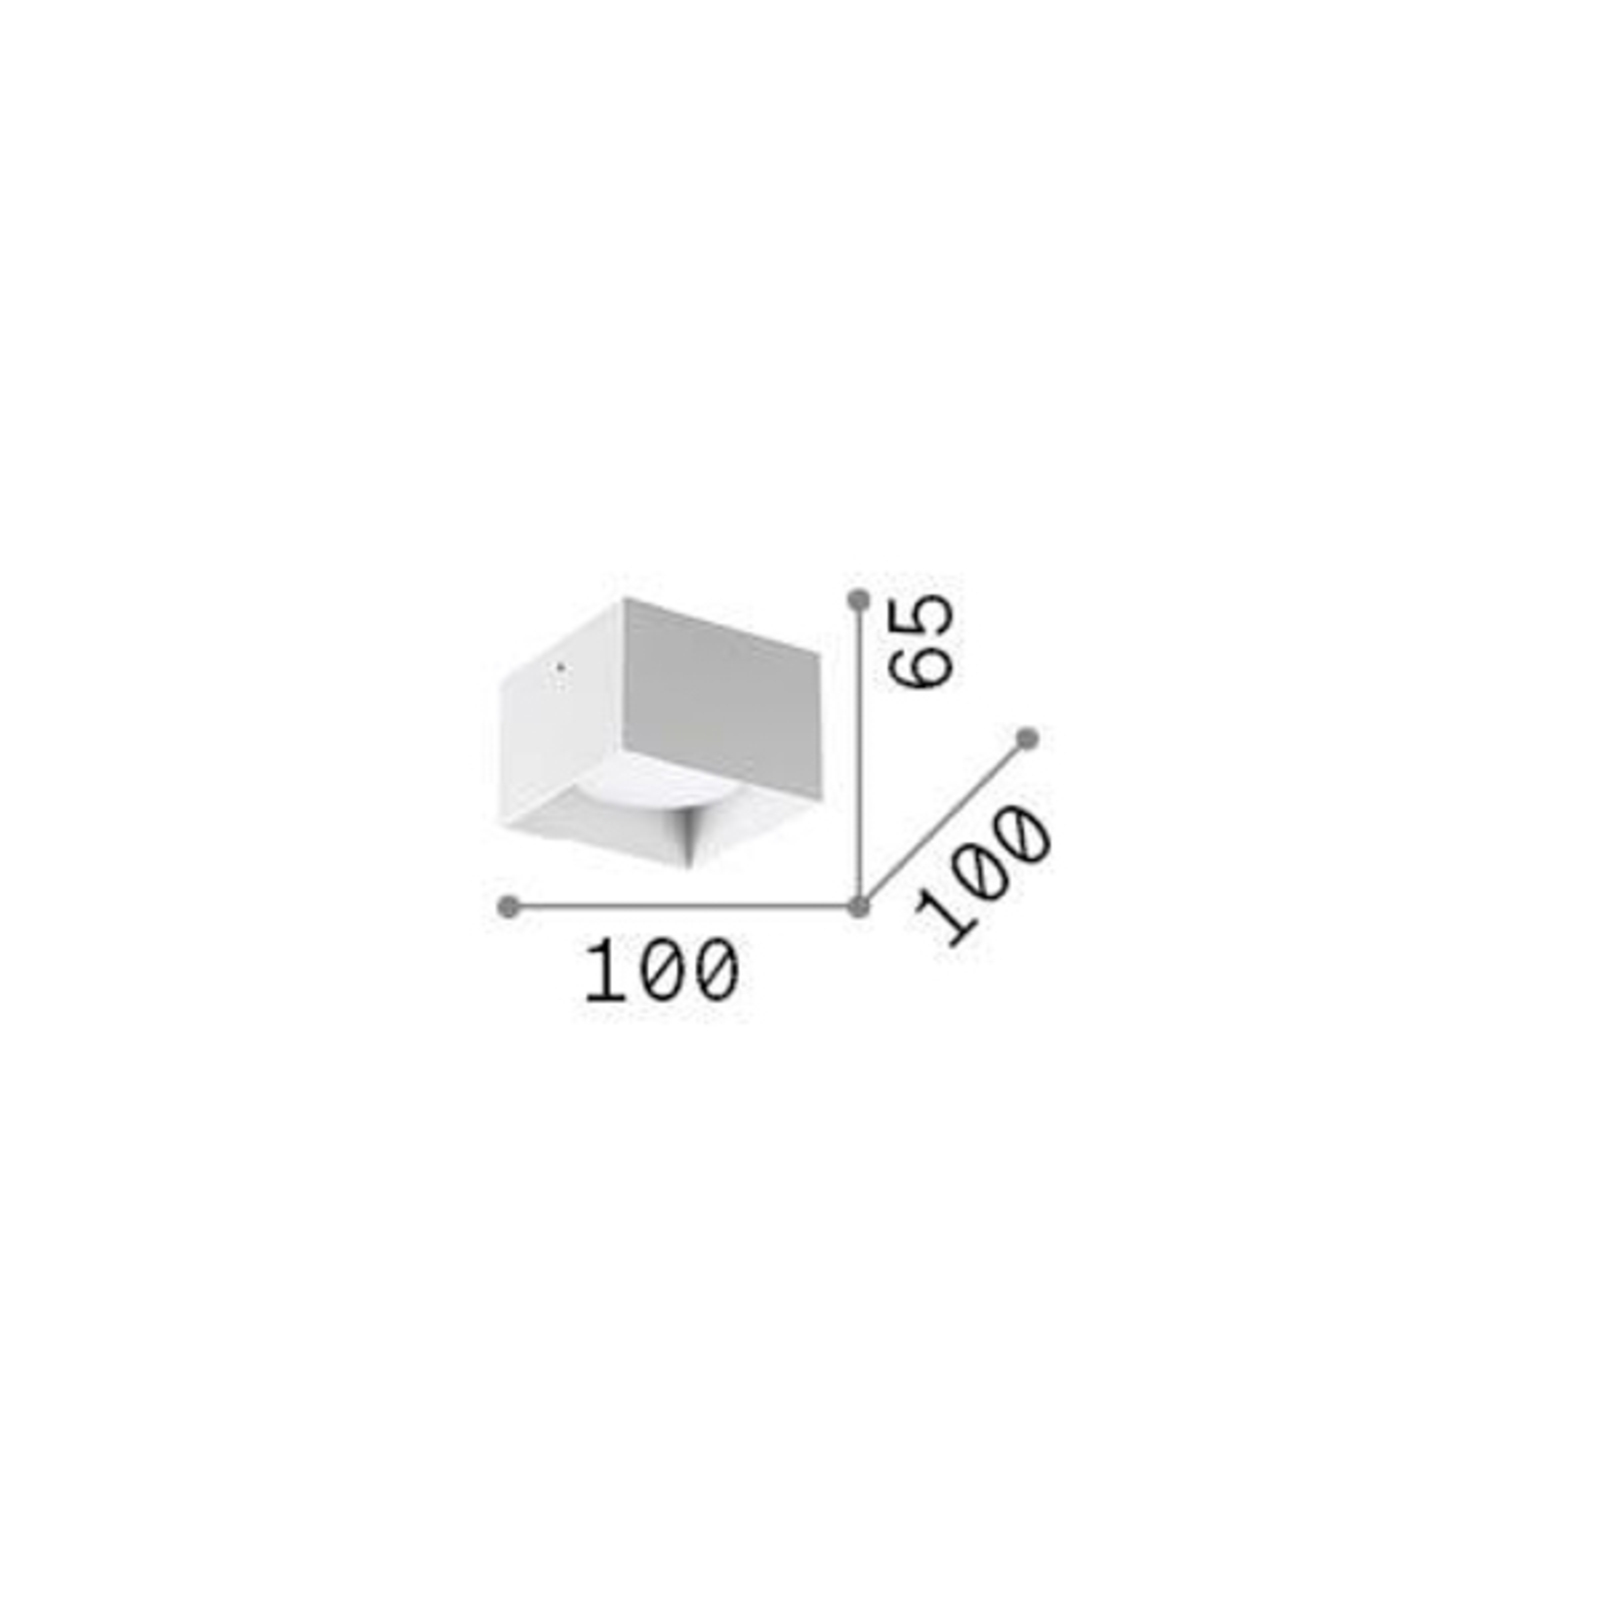 Ideal Lux downlight Spike Square, koperkleurig, aluminium, 10 cm